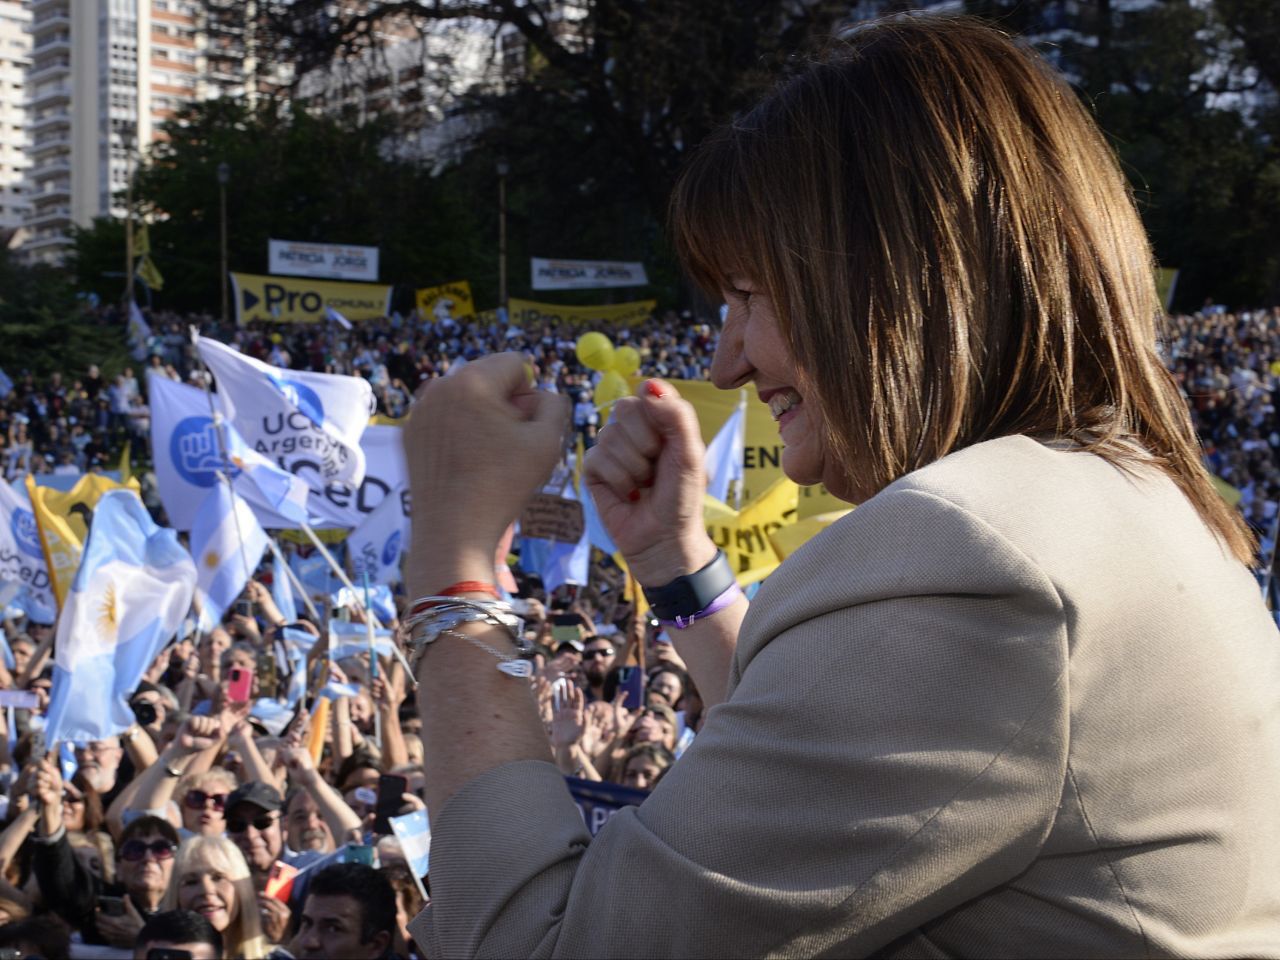 Bullrich cierre de campaña en Barrancas de Belgrano CABA